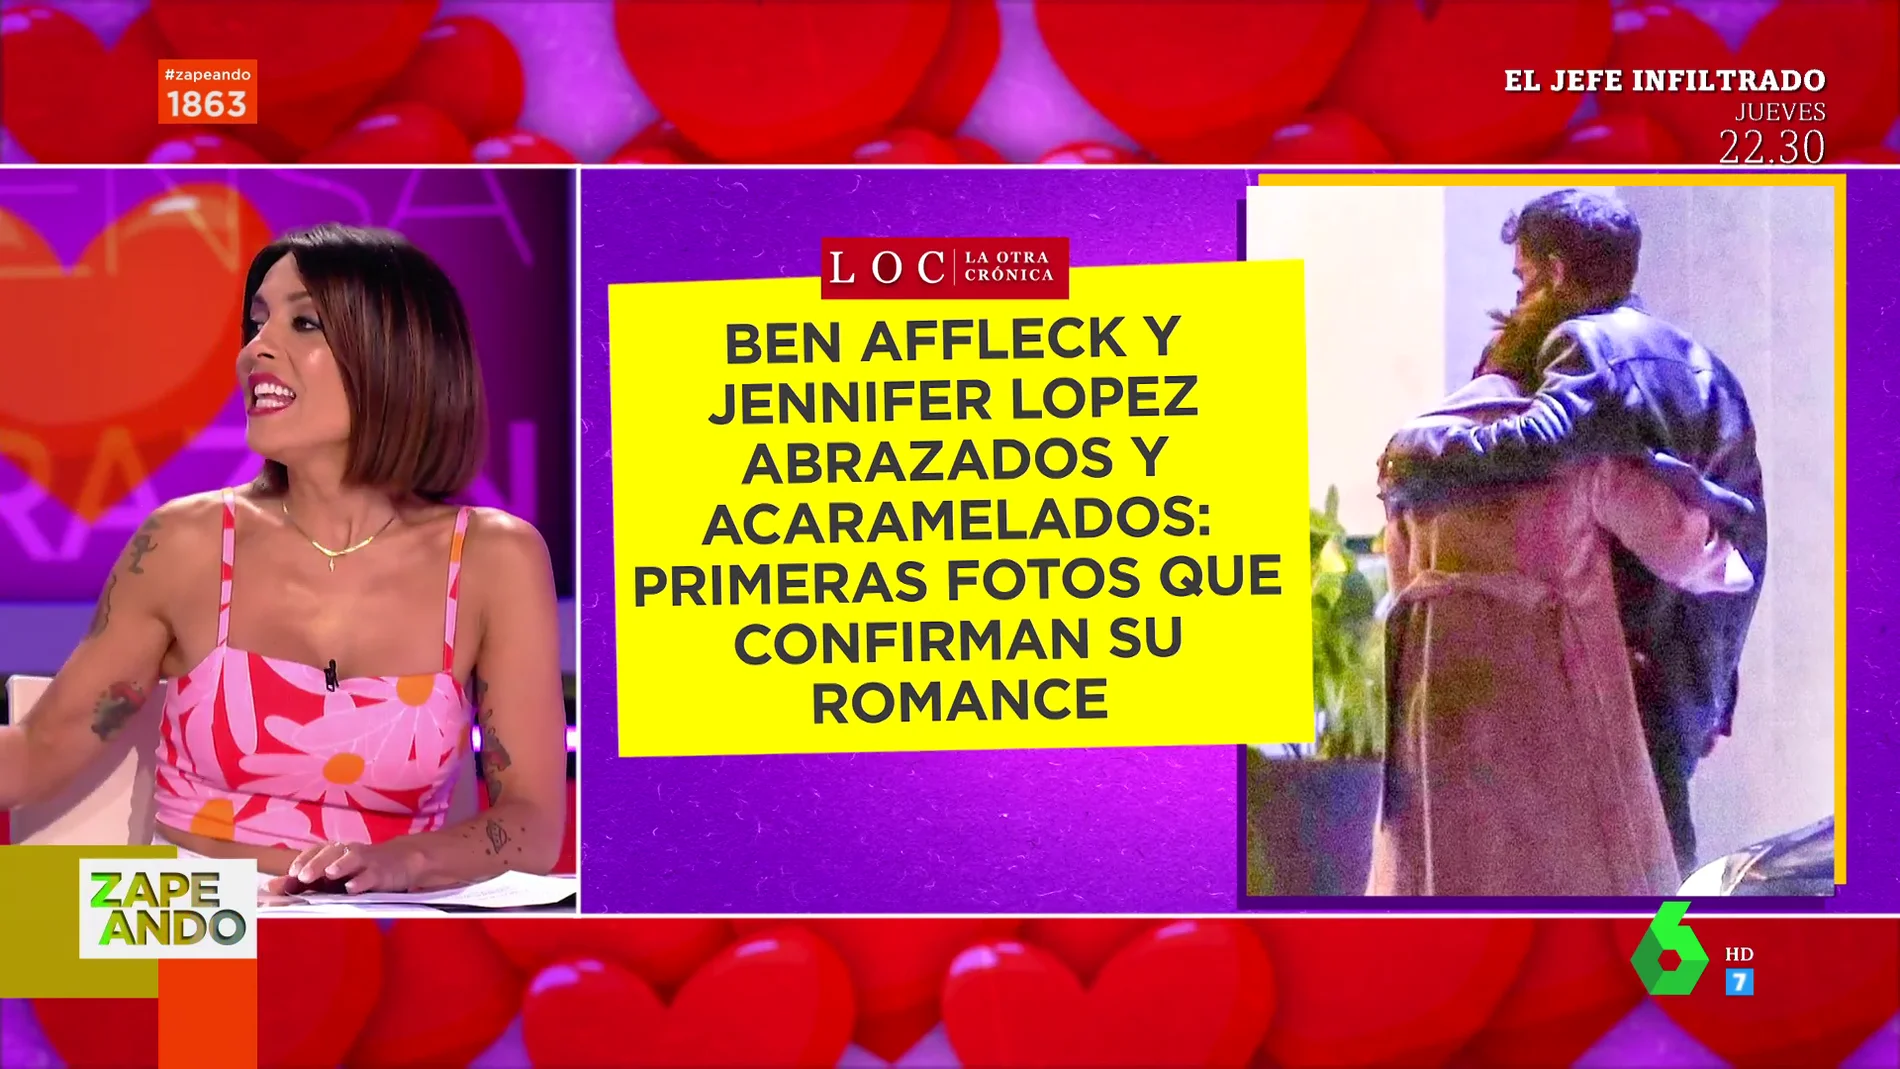 Ben Affleck y Jennifer López: las románticas imágenes abrazados que devuelven la ilusión a Lorena Castell de enamorarse